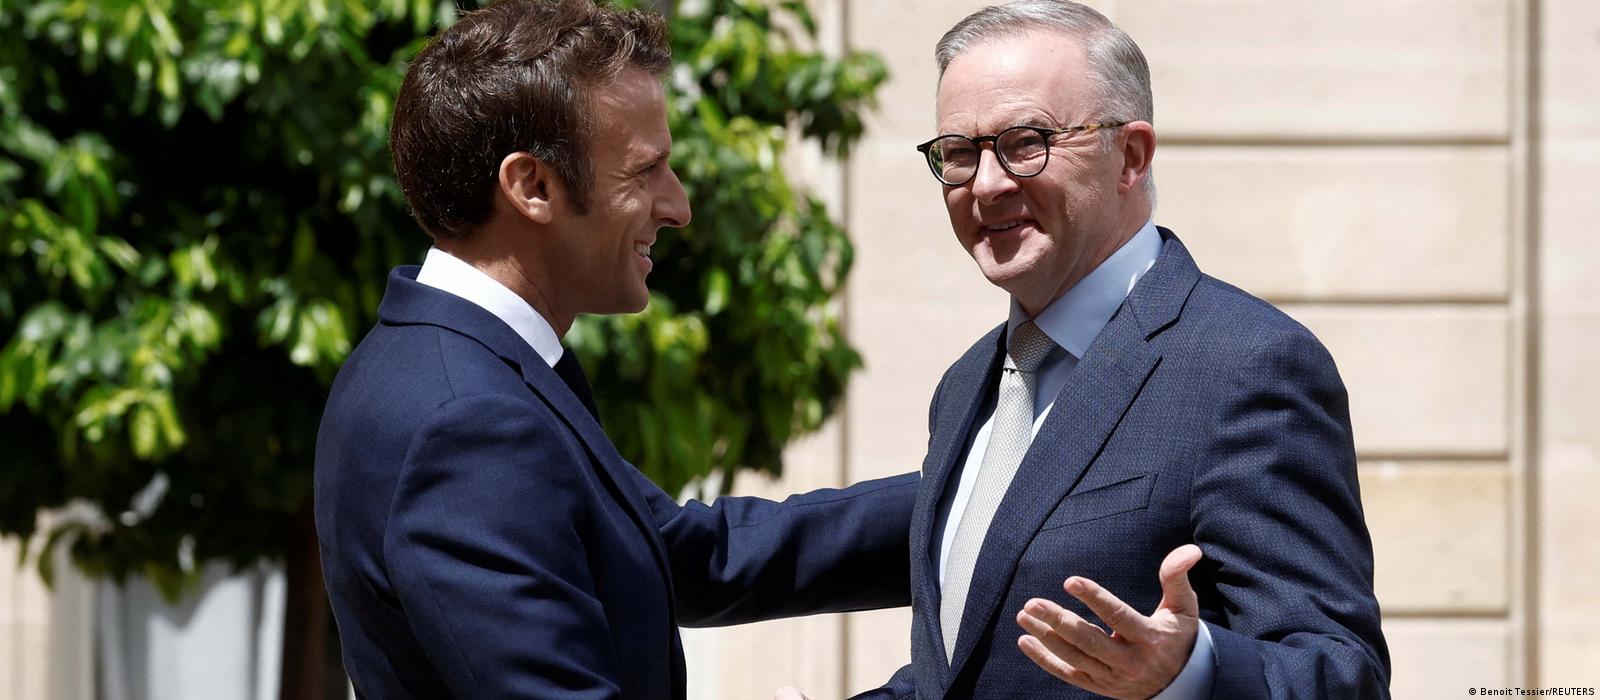 Australian PM meets Macron 10 months after sub spat – DW – 07/01/2022